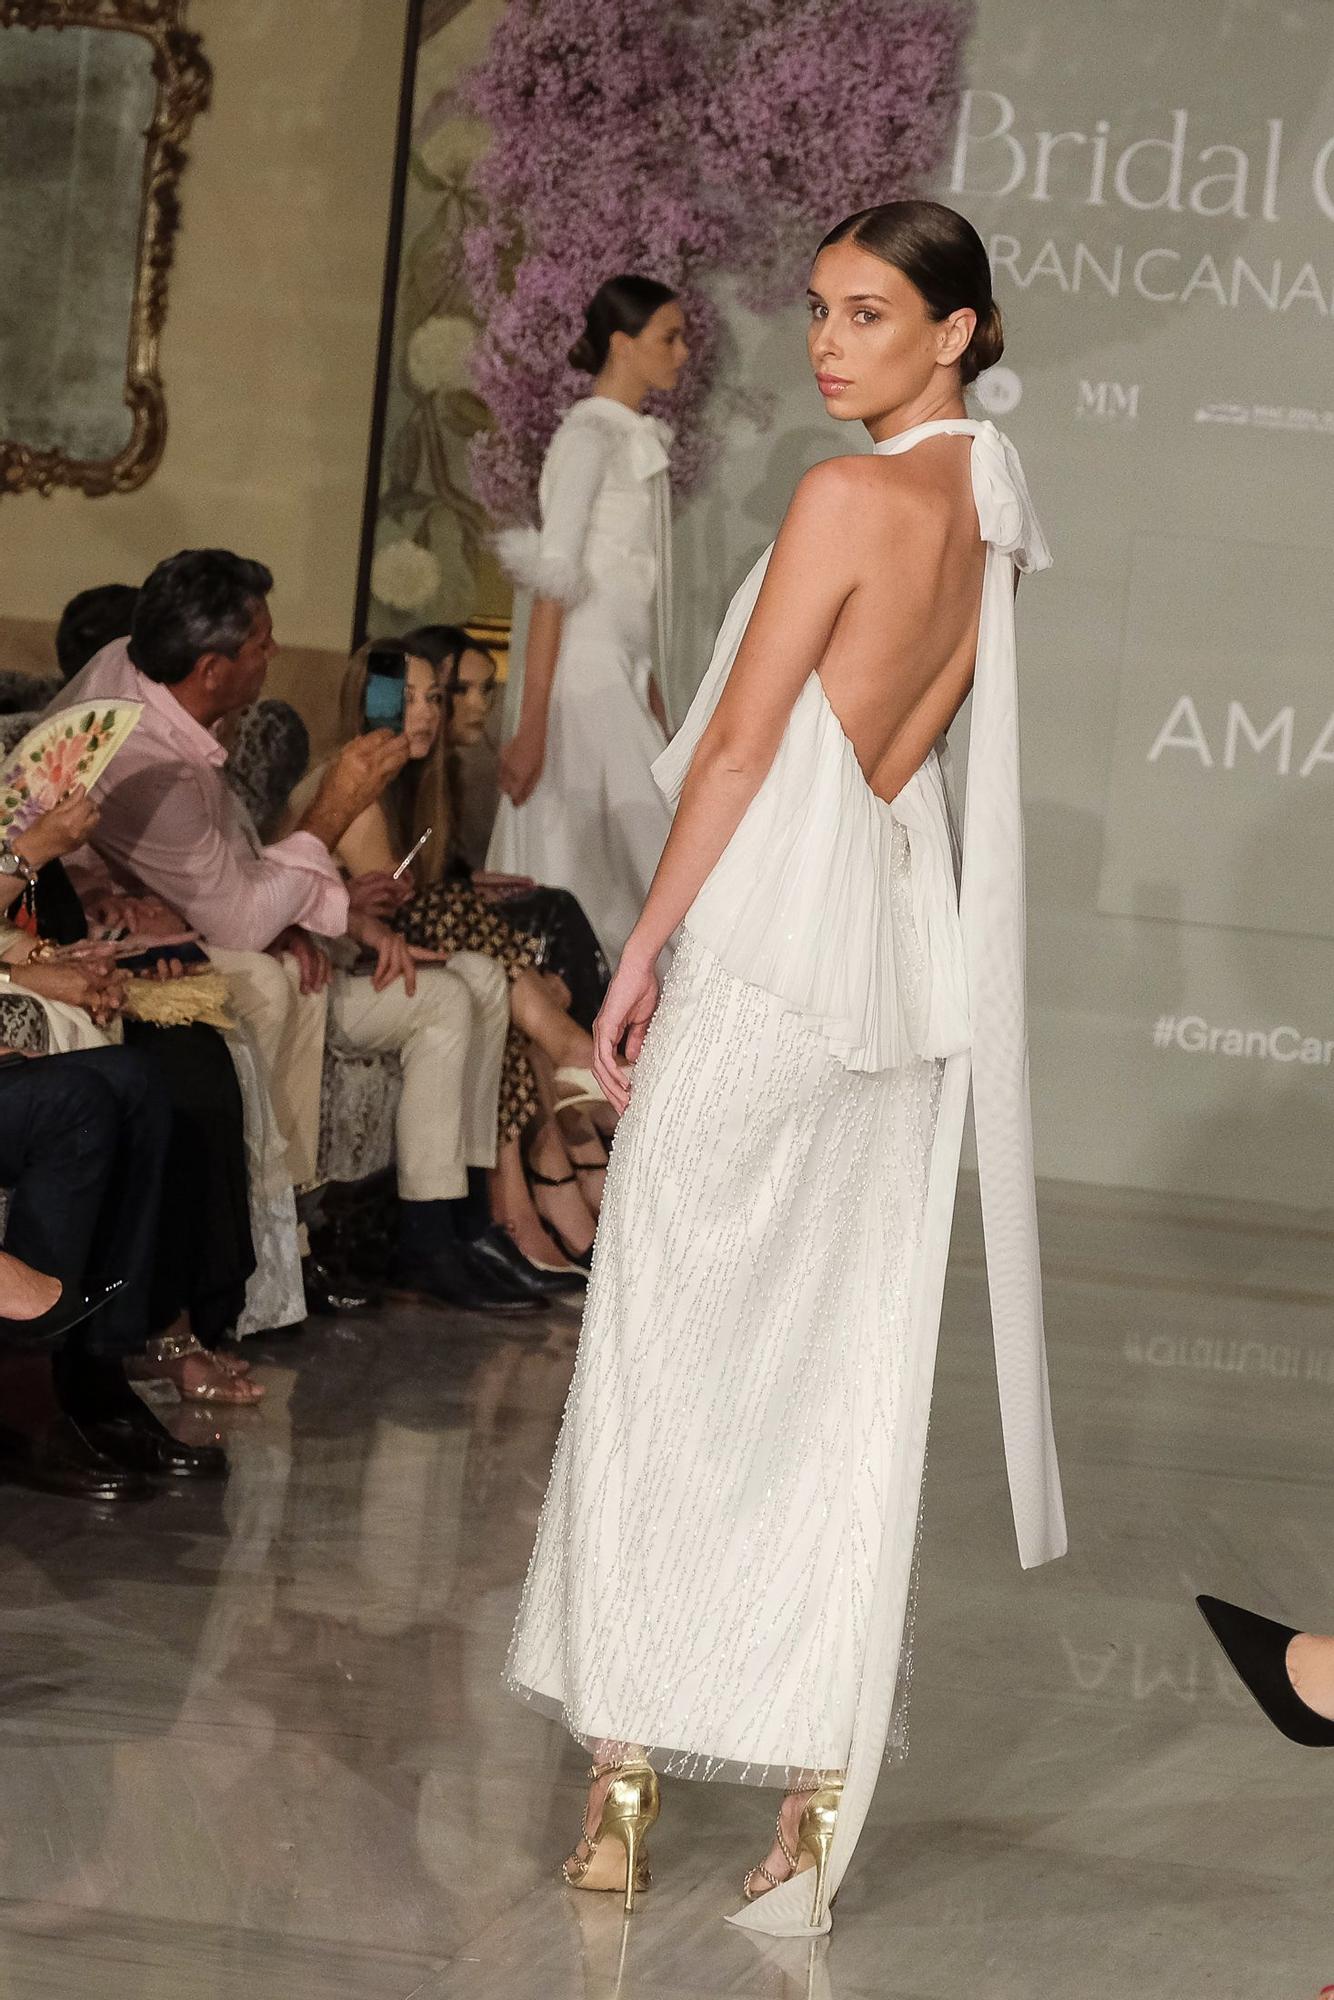 Tercera y última jornada de Bridal Collection Gran Canaria Moda Cálida